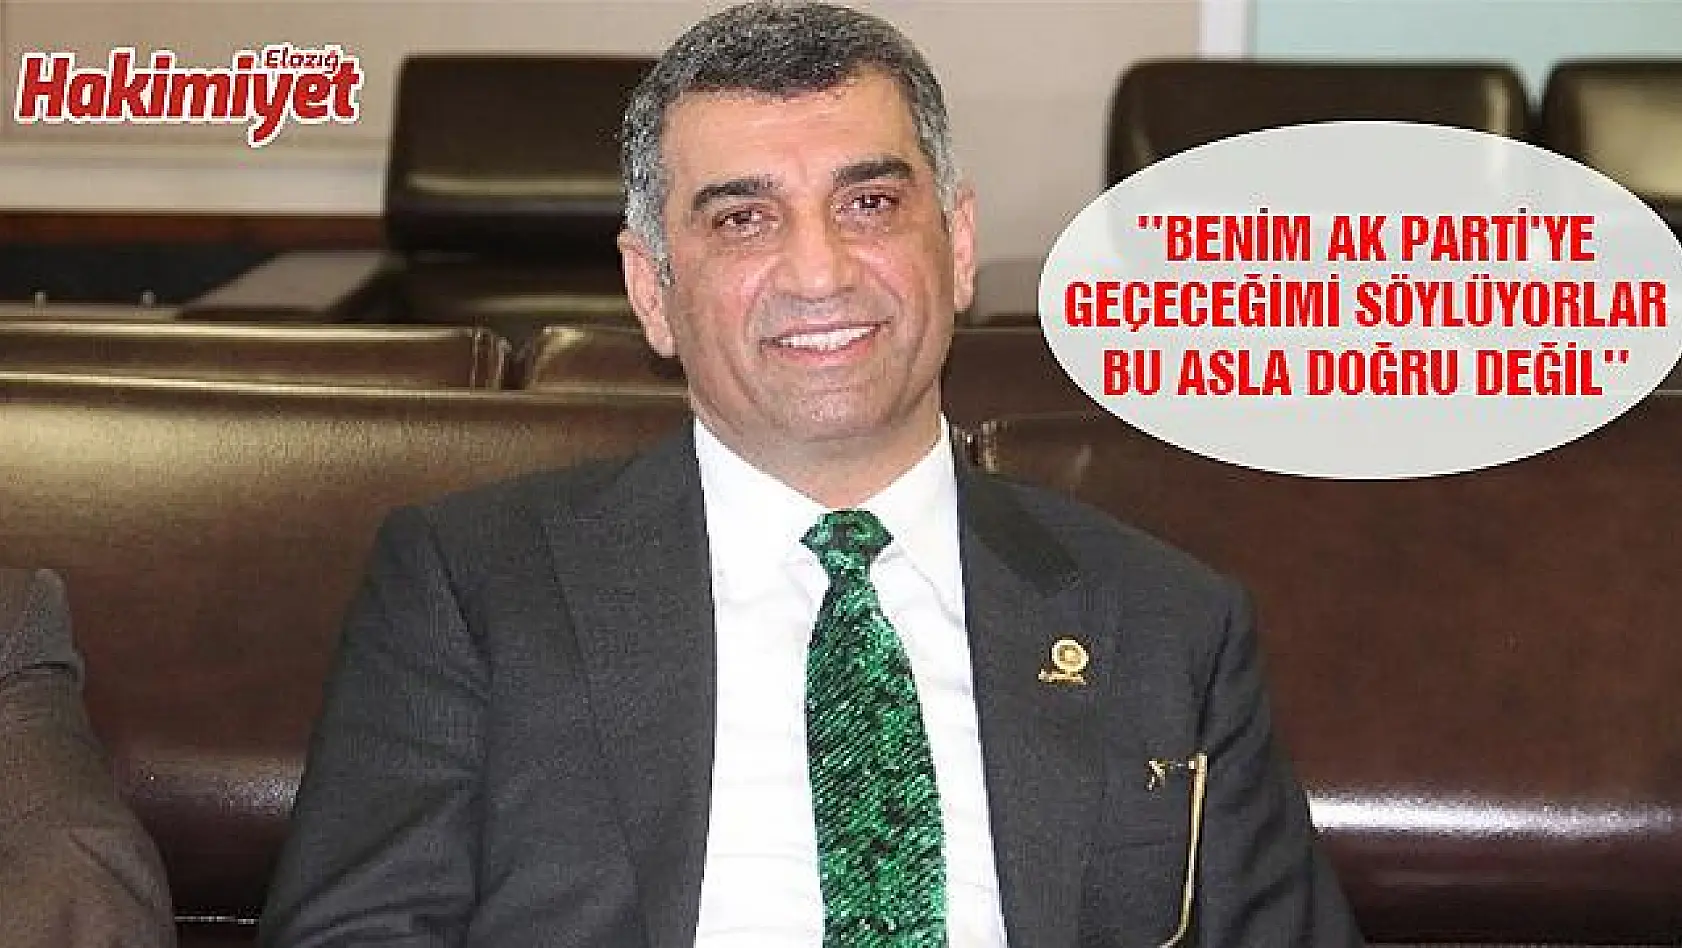  ' HDP ASILSIZ İDDİALARLA BENDEN İNTİKAM ALMAK İSTİYOR'